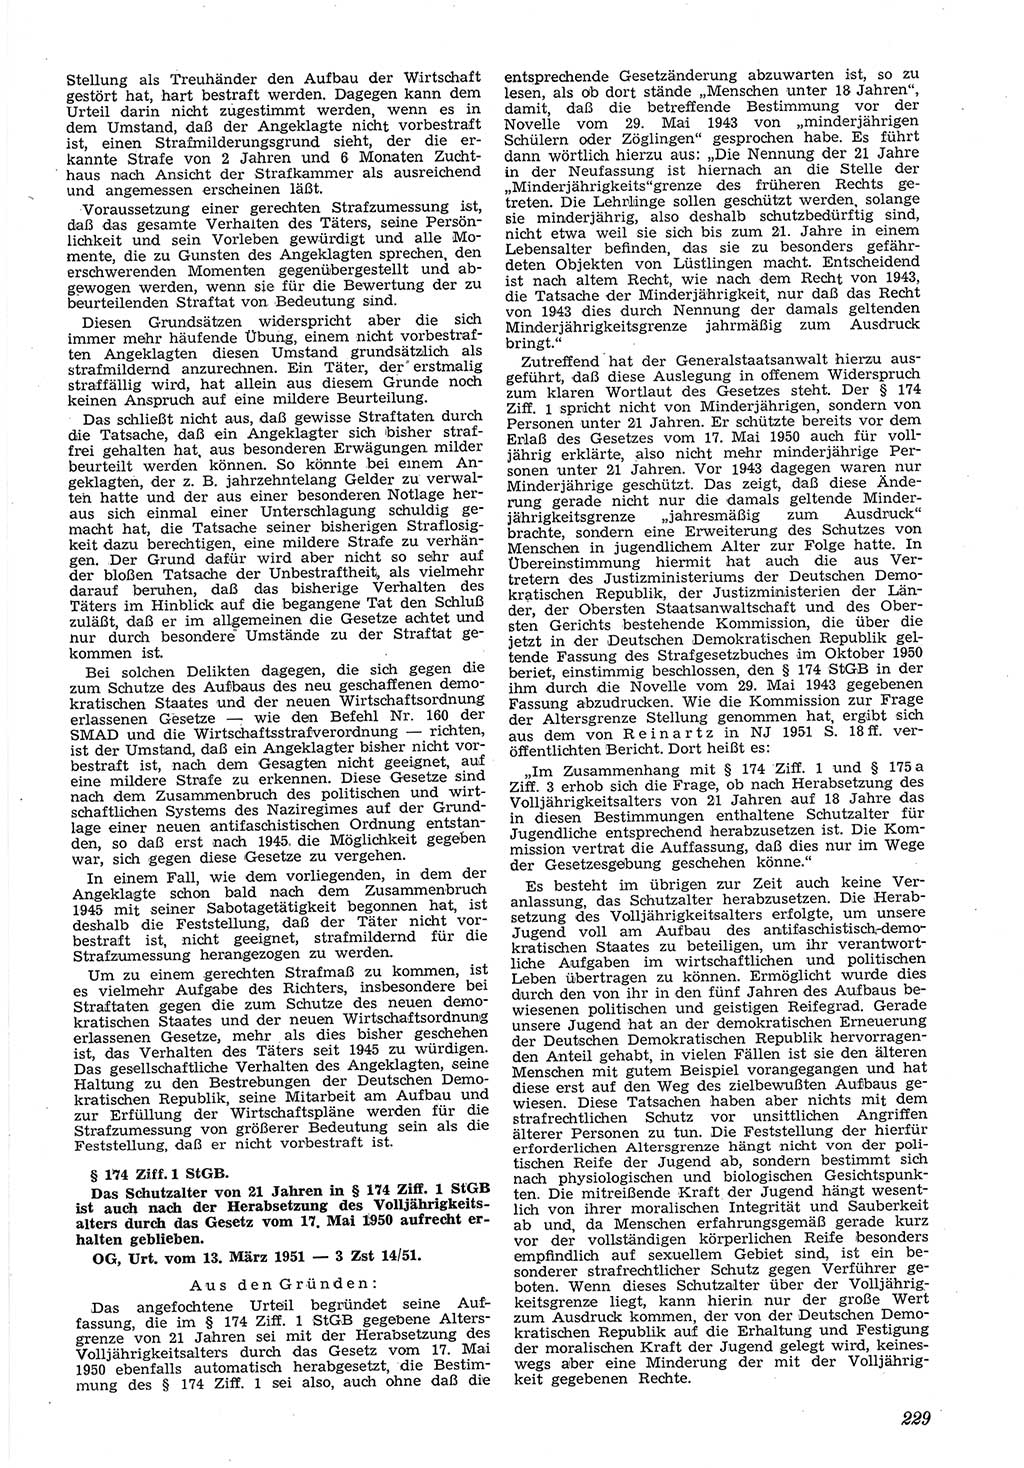 Neue Justiz (NJ), Zeitschrift für Recht und Rechtswissenschaft [Deutsche Demokratische Republik (DDR)], 5. Jahrgang 1951, Seite 229 (NJ DDR 1951, S. 229)